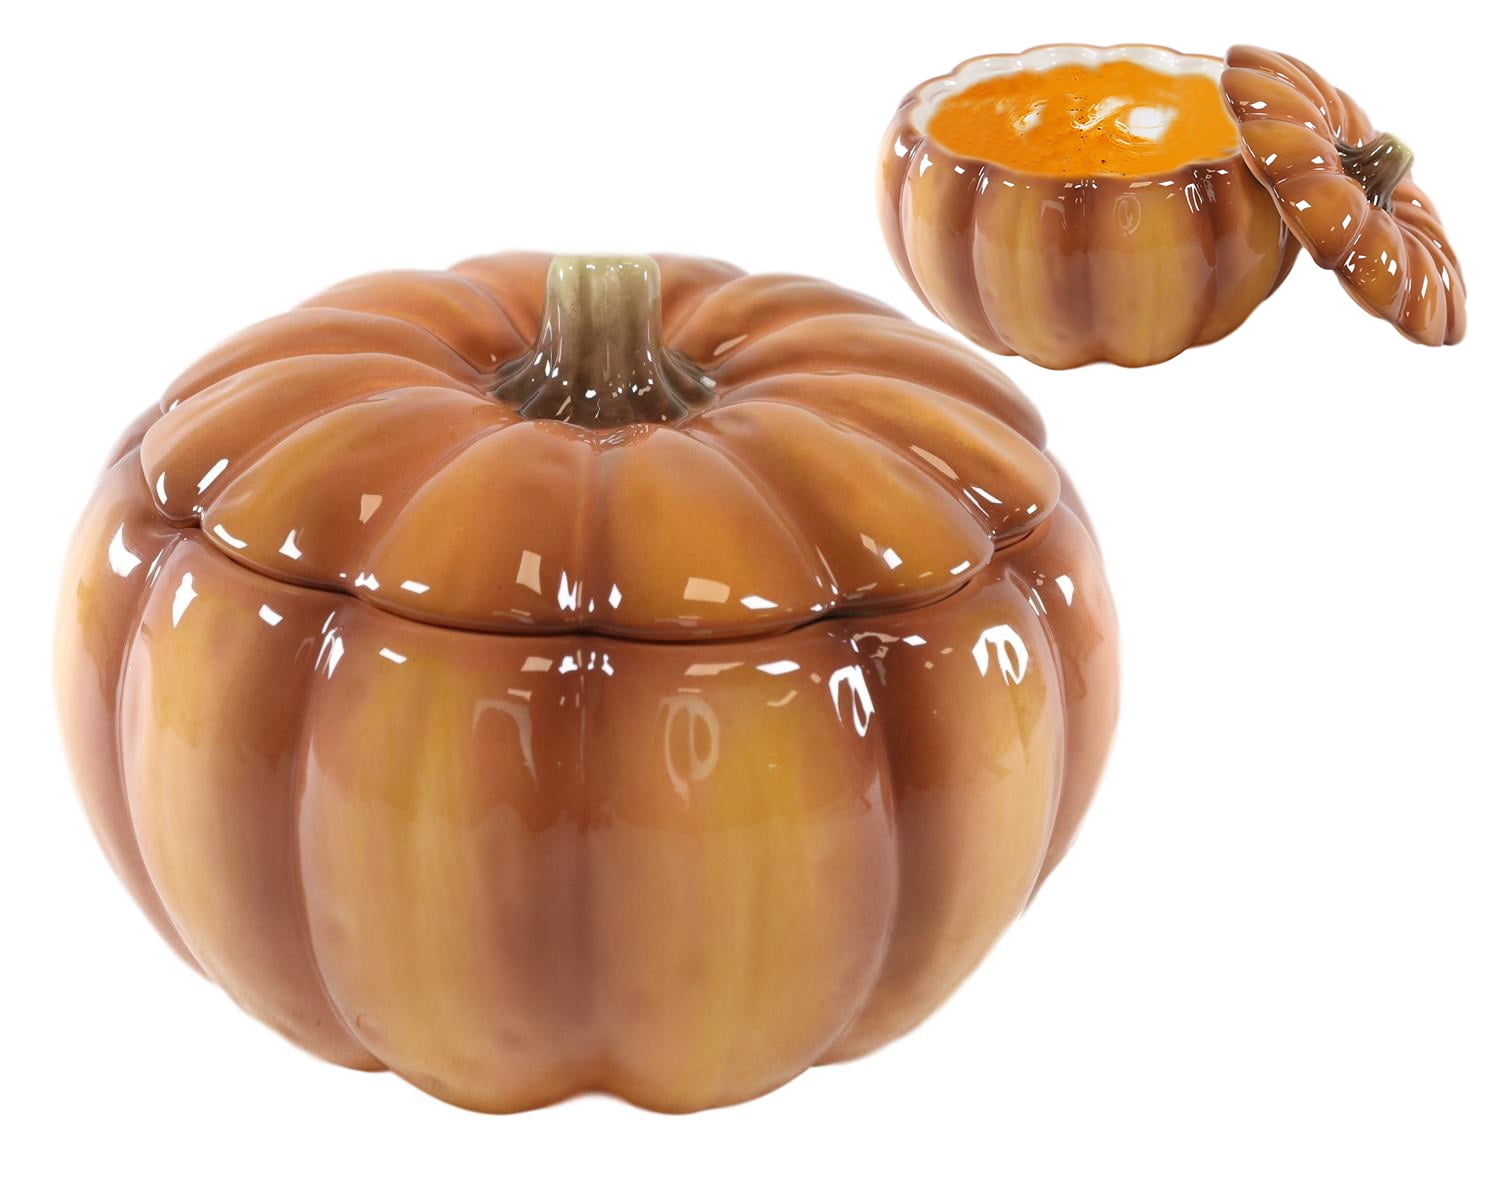 Details about   Ceramic Pumpkin Bowls 2" Deep Orange Sculpted Stem Handles Food Safe 